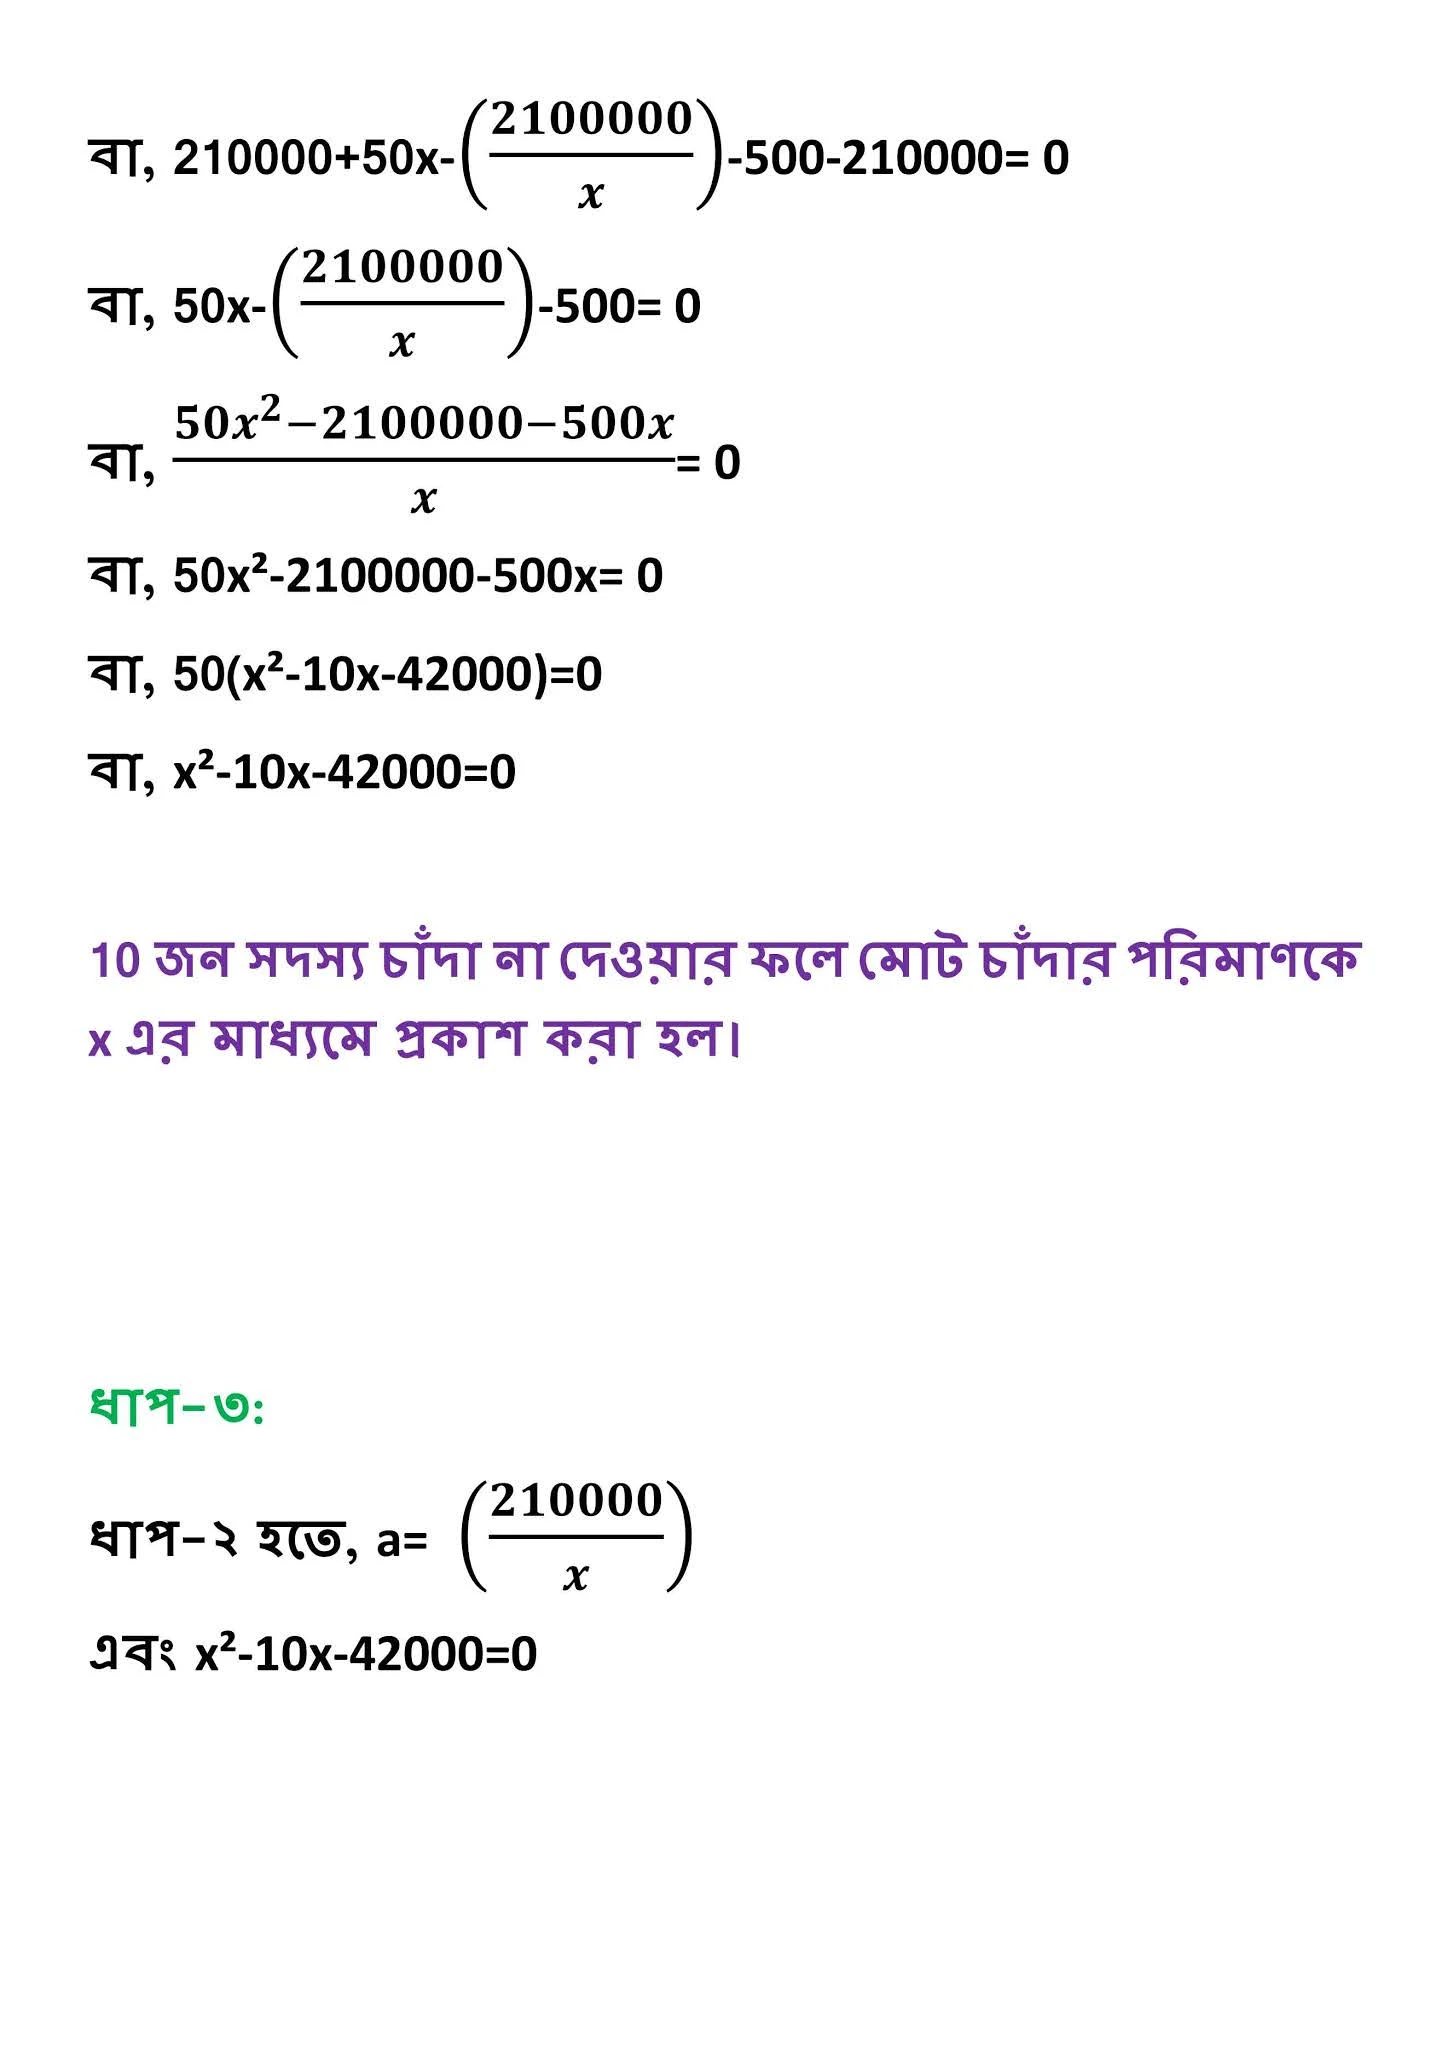 নবম-৯ম শ্রেণির ৭ম সপ্তাহের গণিত এসাইনমেন্ট সমাধান/উত্তর ২০২১ | Class 9 Math Assignment Answer 2021 (7th Week)